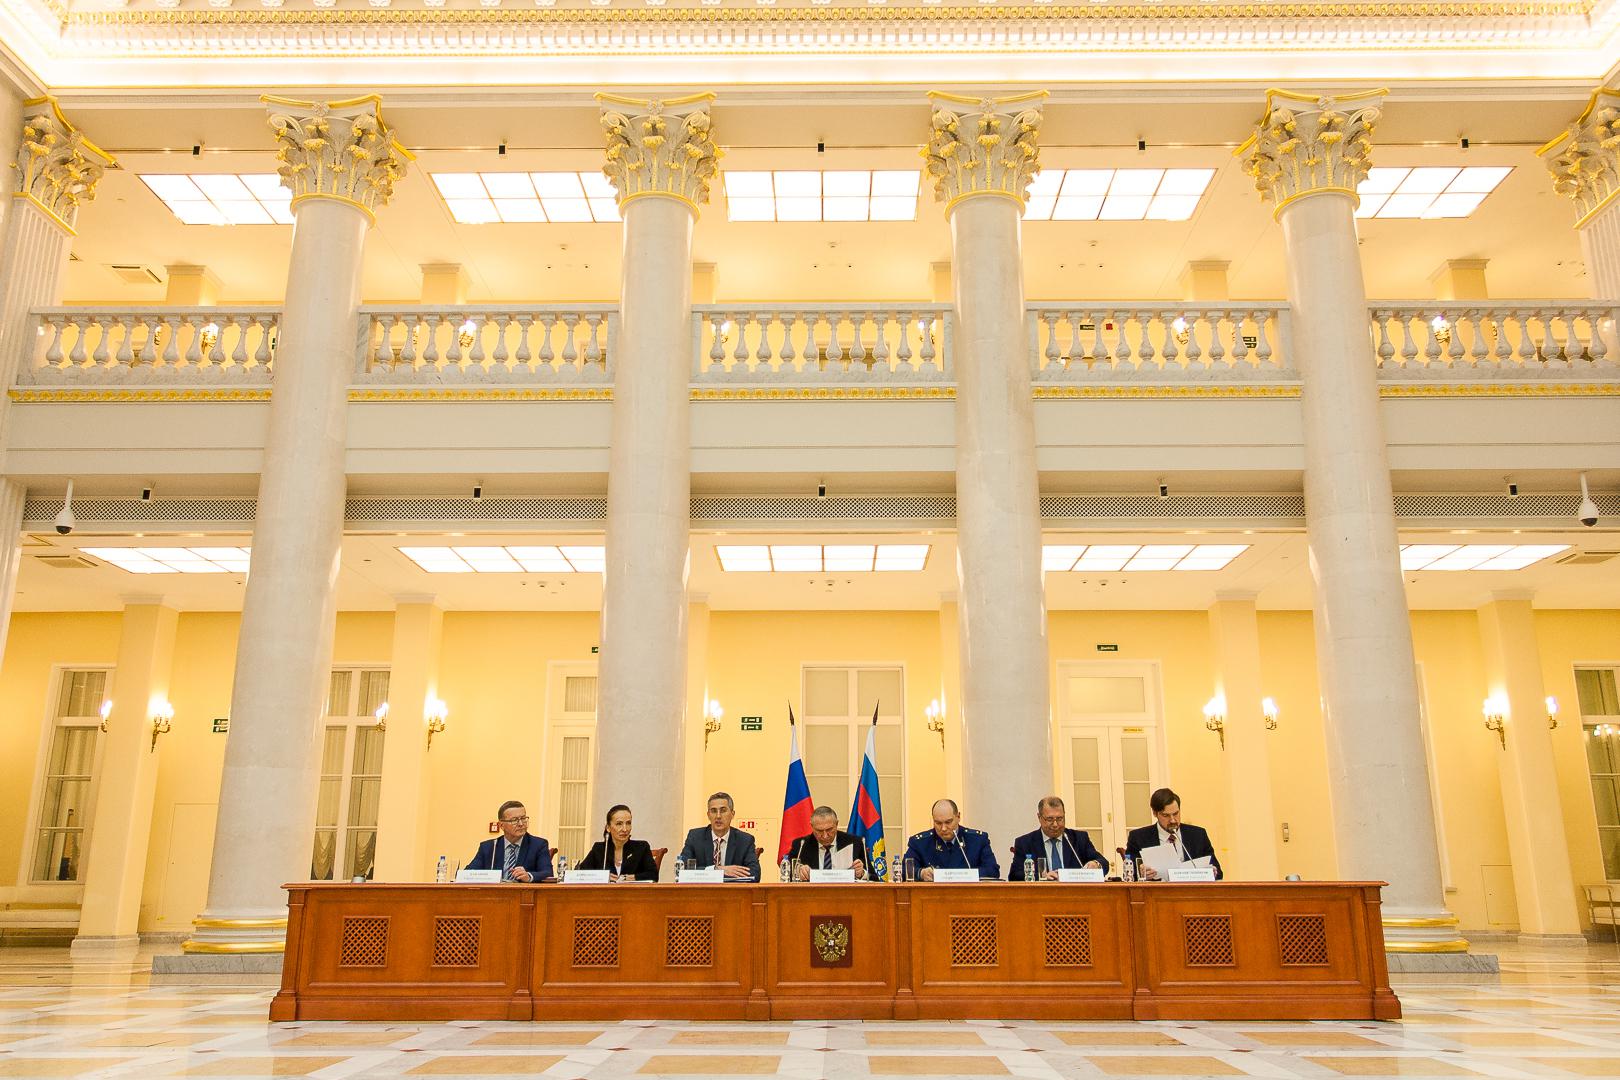 Руководители Контрольно-счетной палаты Санкт-Петербурга приняли участие в заседании Коллегии Управления Федерального казначейства по Санкт-Петербургу